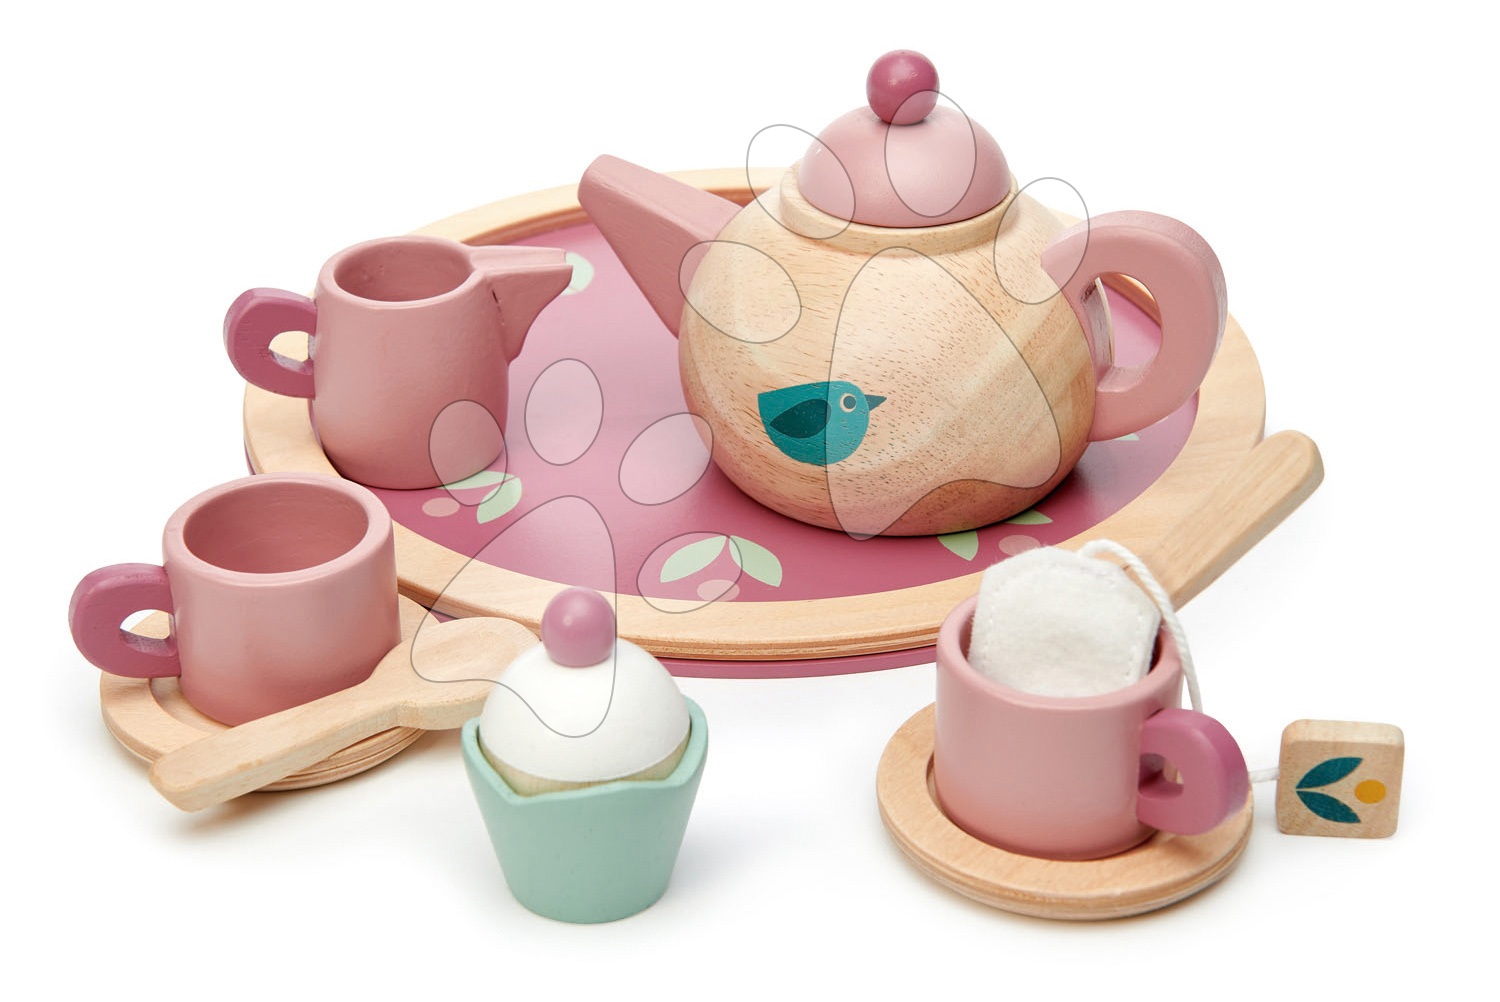 Drevený čajník Birdie Tea set Tender Leaf Toys na tácke so šálkami s čajovým vrecúškom